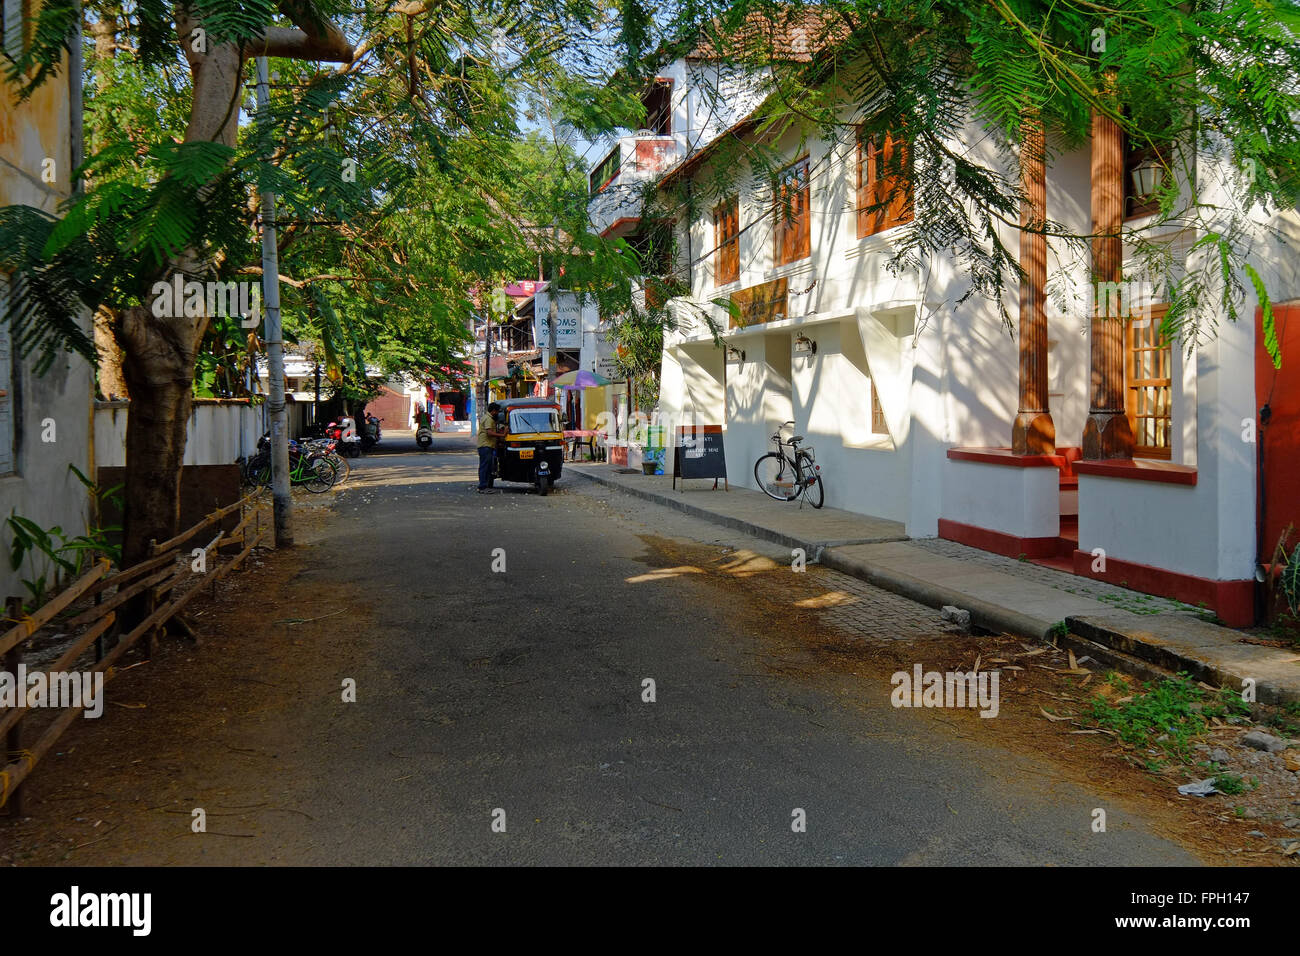 Tuk tuk in street In the old town of Kochi ( Cochin) , Kerala, India Stock Photo